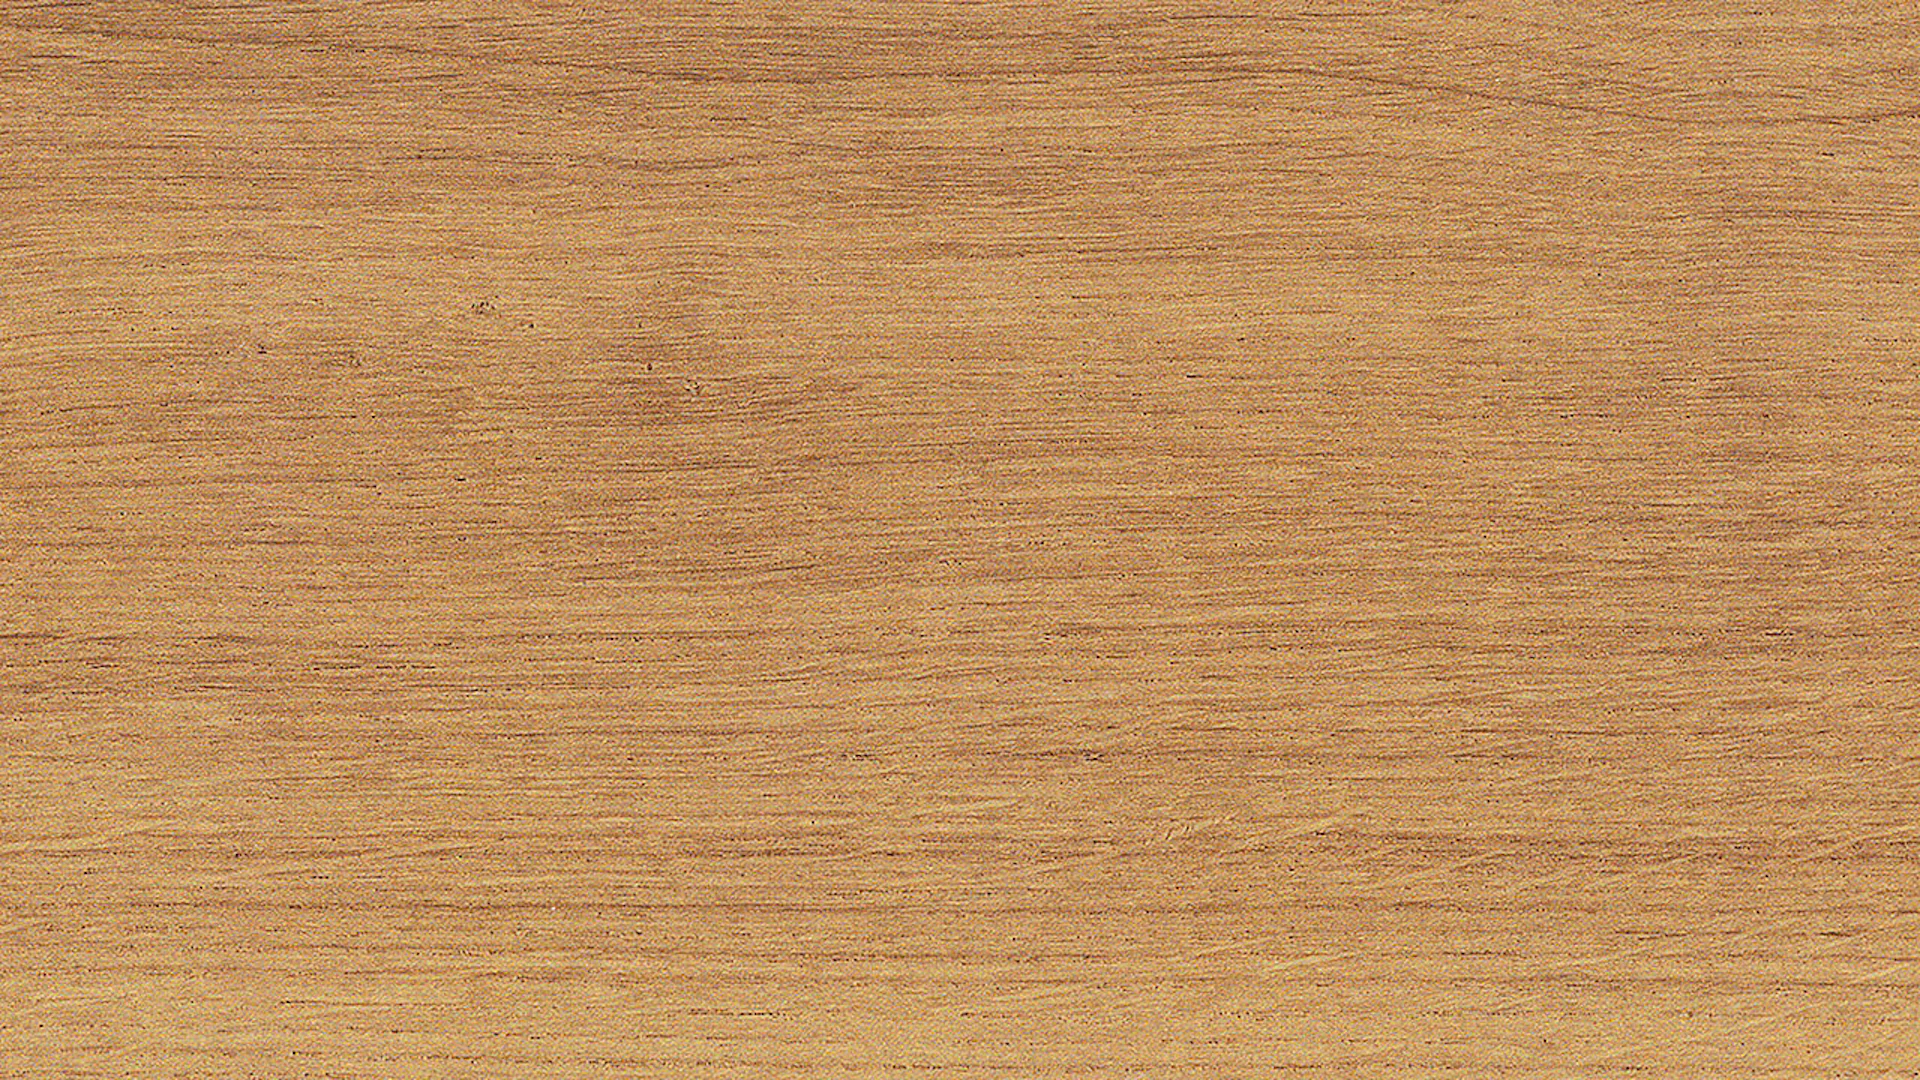 Wicanders pavimento in sughero a cliccare - Essenza del legno Rovere Primo dorato 10,5mm sughero - NPC sigillato